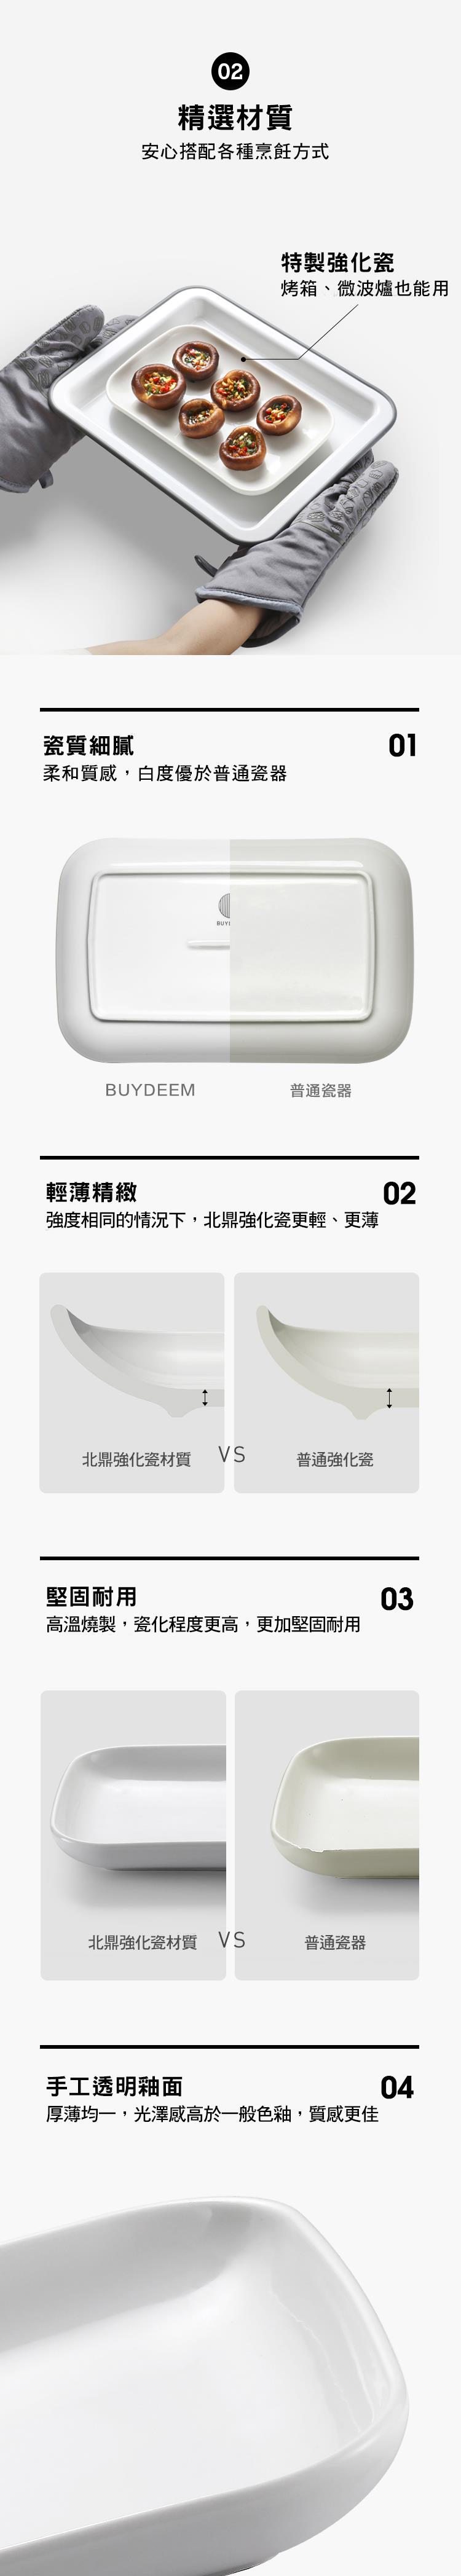 BUYDEEM北鼎方型瓷盤_產品介紹3_多功能蒸燉鍋同款尺寸